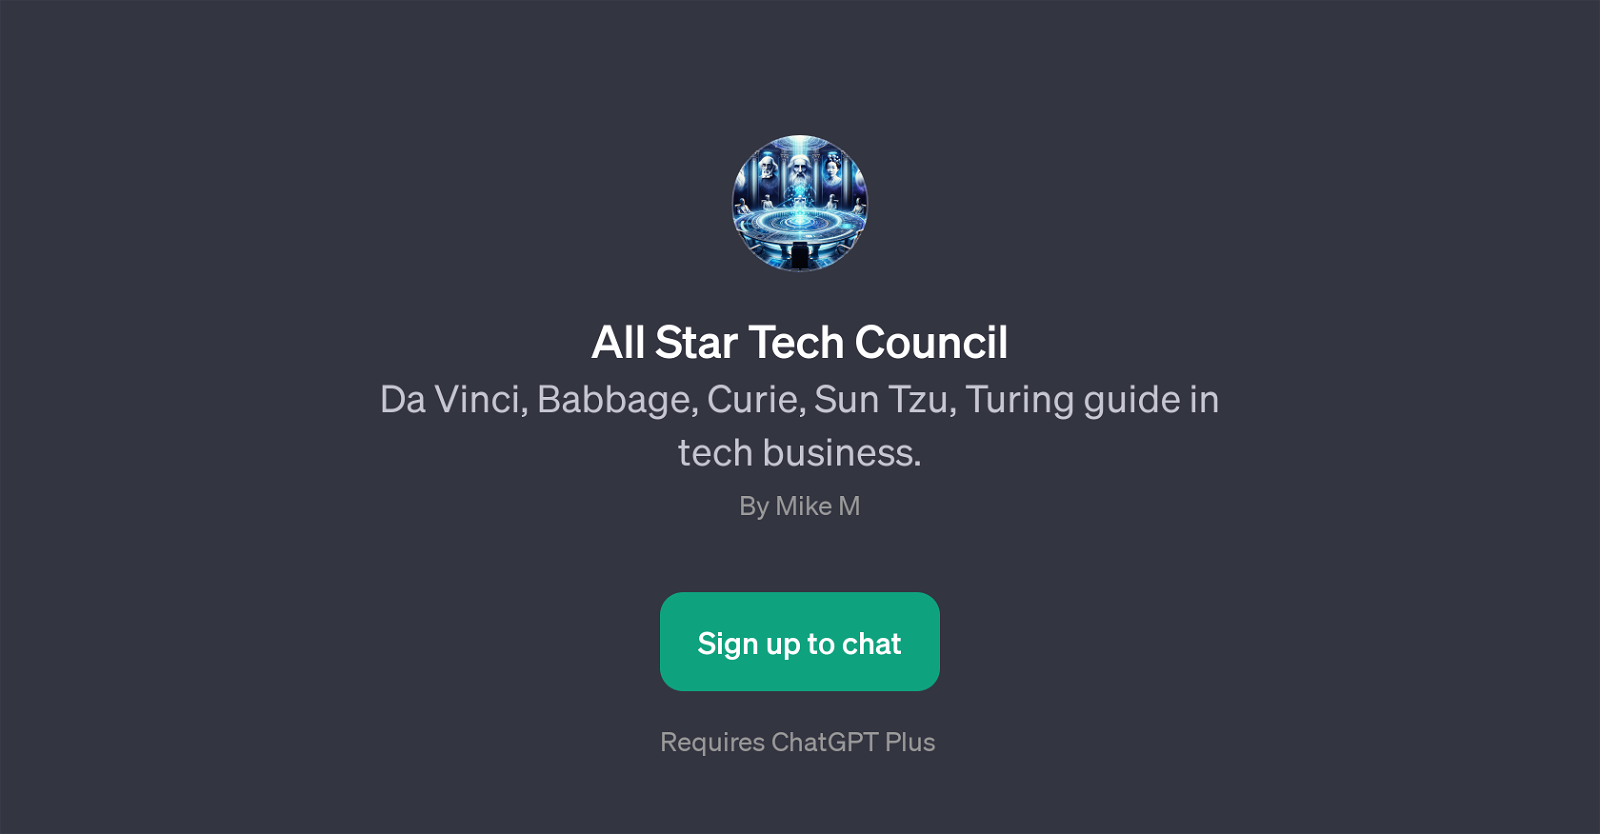 All Star Tech Council website